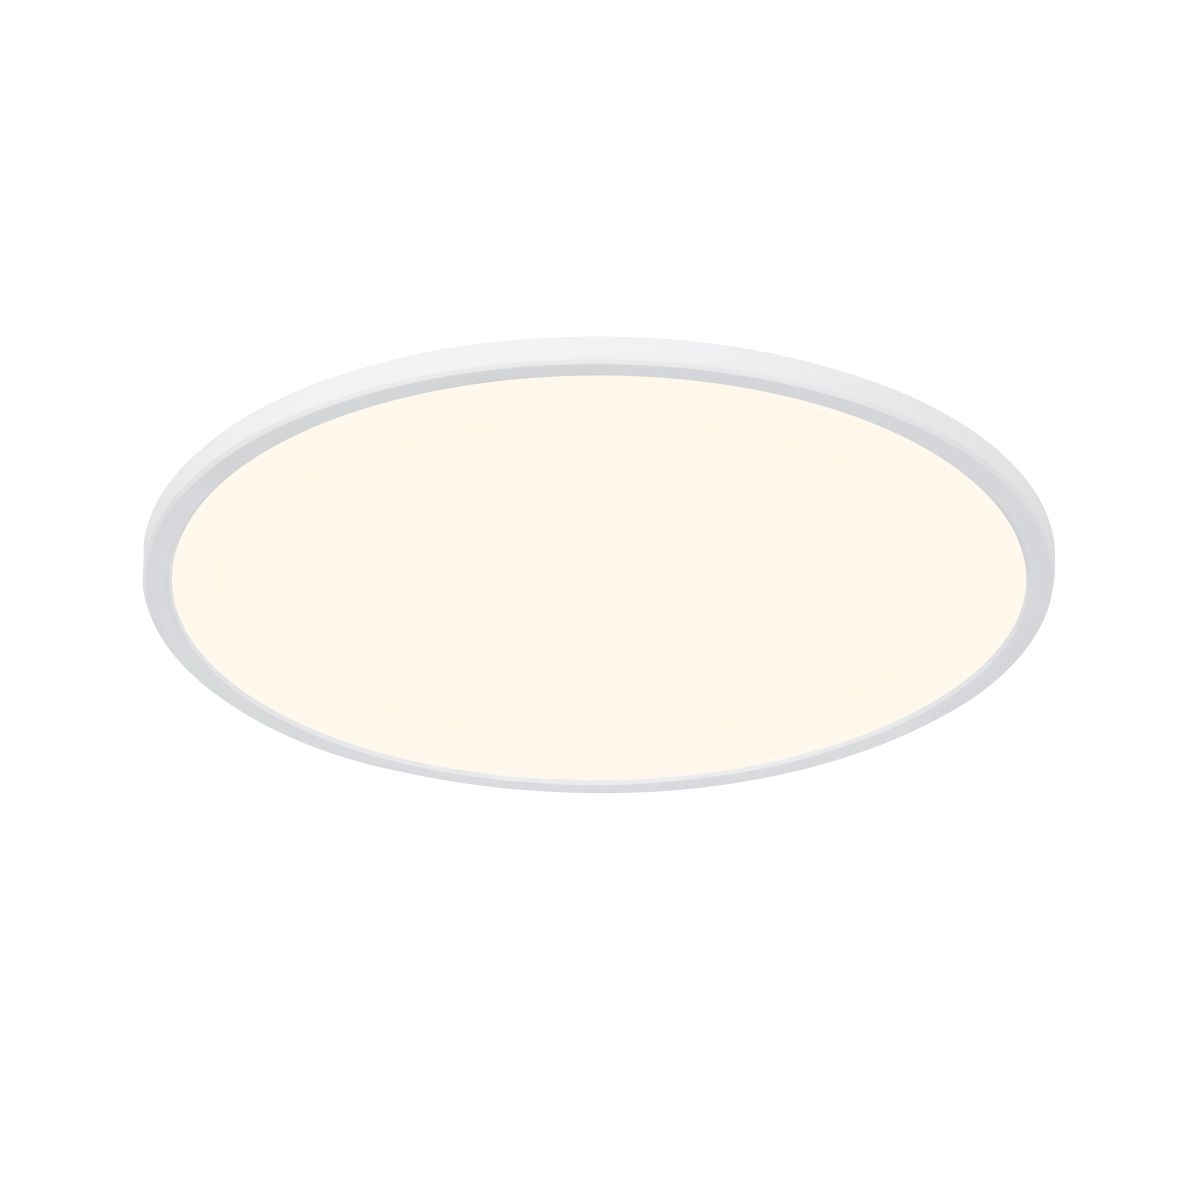 Moderne Flache Deckenleuchte Weiß 1x19W LED 2200lm IP54 3000K/4000K | eBay